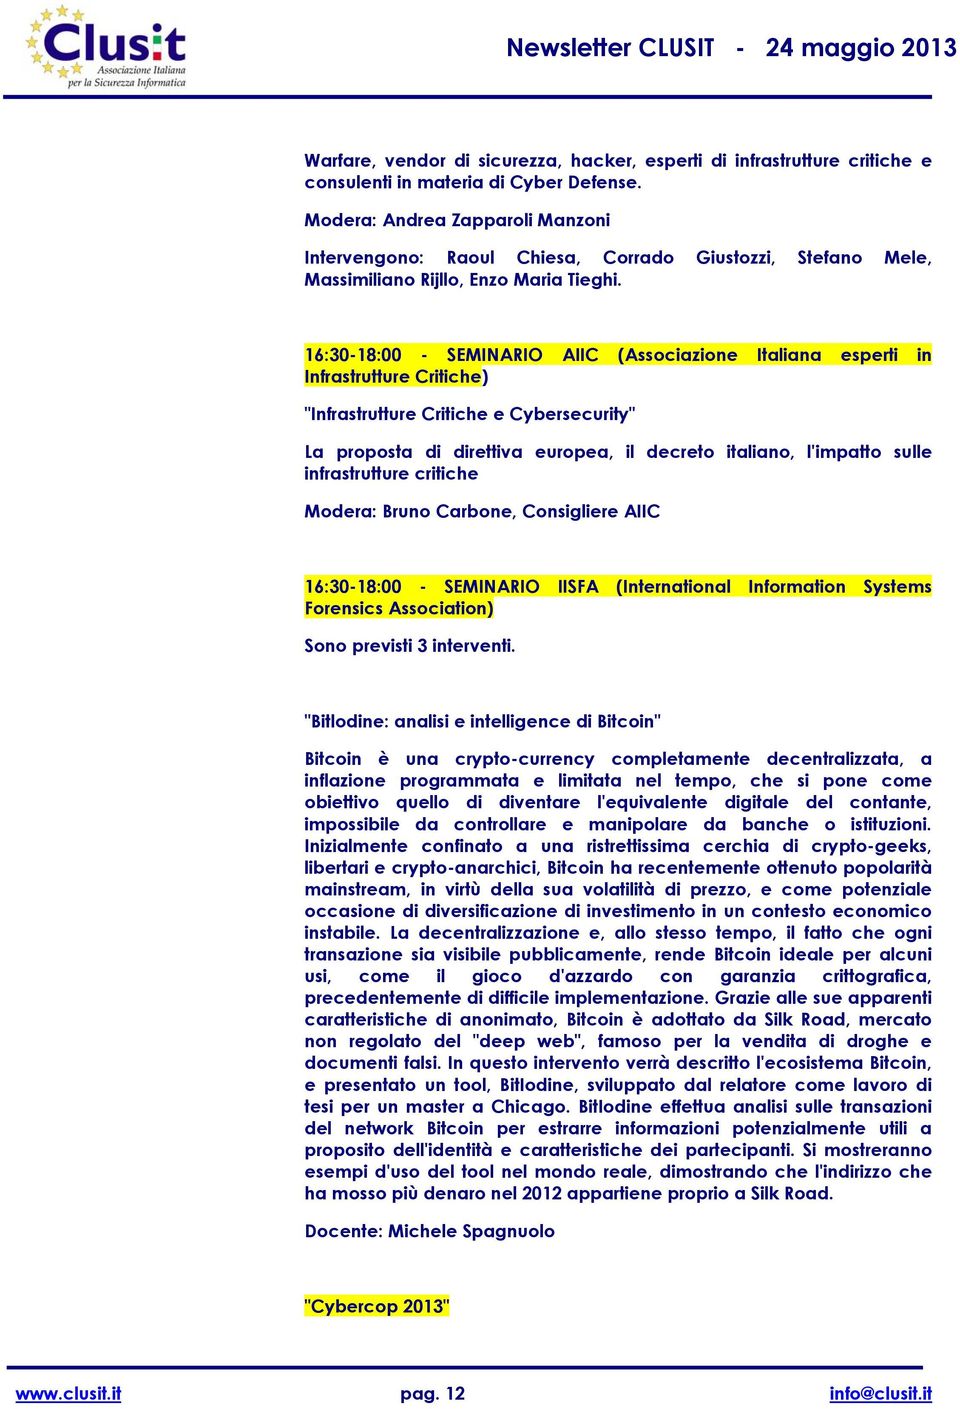 16:30-18:00 - SEMINARIO AIIC (Associazione Italiana esperti in Infrastrutture Critiche) "Infrastrutture Critiche e Cybersecurity" La proposta di direttiva europea, il decreto italiano, l'impatto